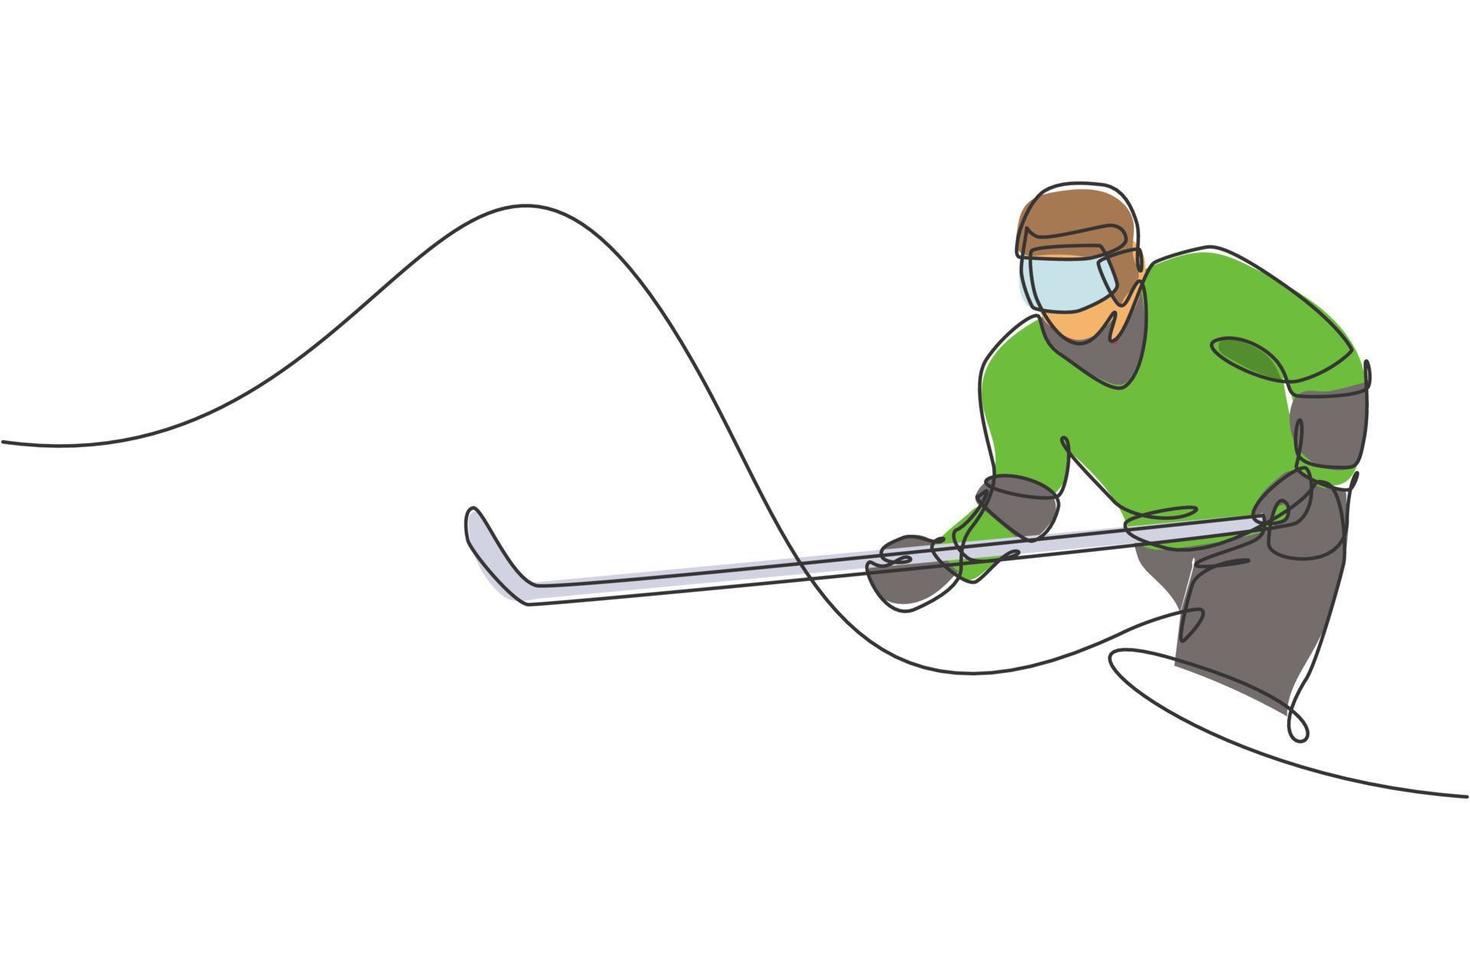 eine durchgehende Linienzeichnung eines jungen professionellen Eishockeyspielers, der im Eisstadion trainiert und übt. gesundes extremsportkonzept. dynamische einzeilige Zeichnungsdesign-Vektorillustration vektor